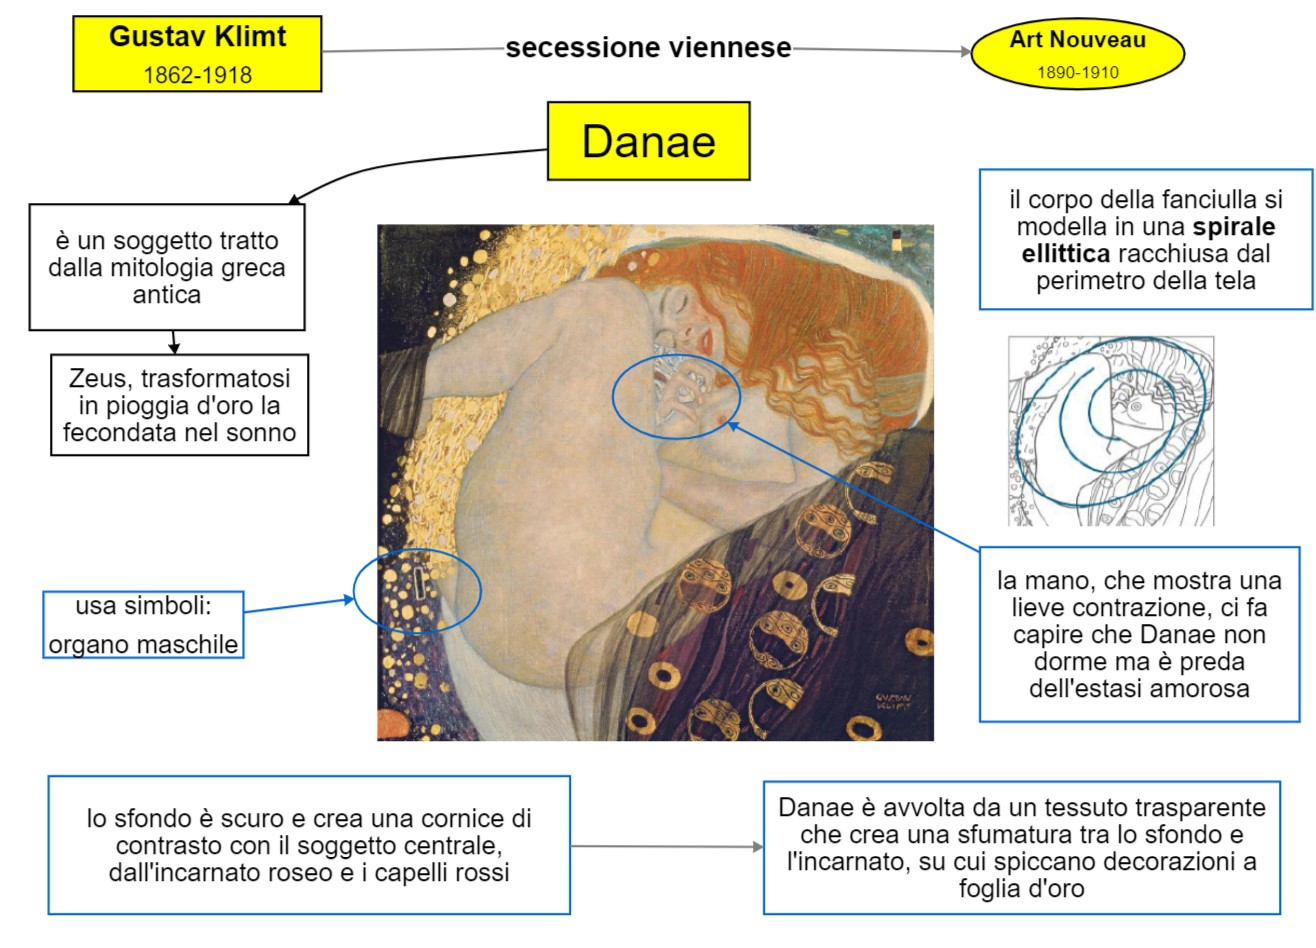 mappa concettuale Gustav Klimt - Danae